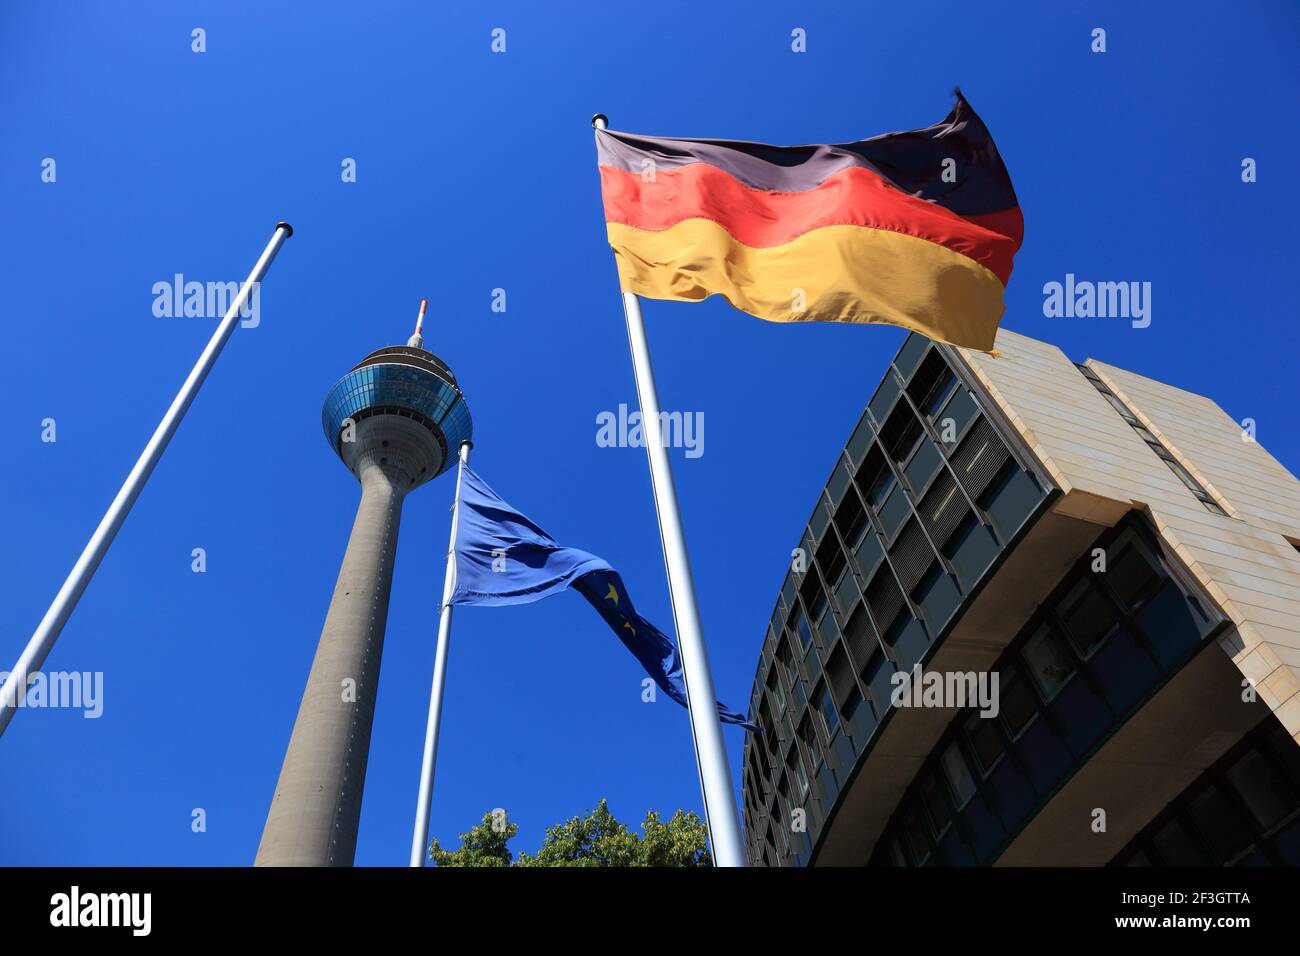 Rheinturm, Landtagsgebäude Nordrhein-Westfalen, Haus des Landtages, Stromstraße, Regierungsviertel, Düsseldorf, Nordrhein-Westfalen, Deutschland Stock Photo